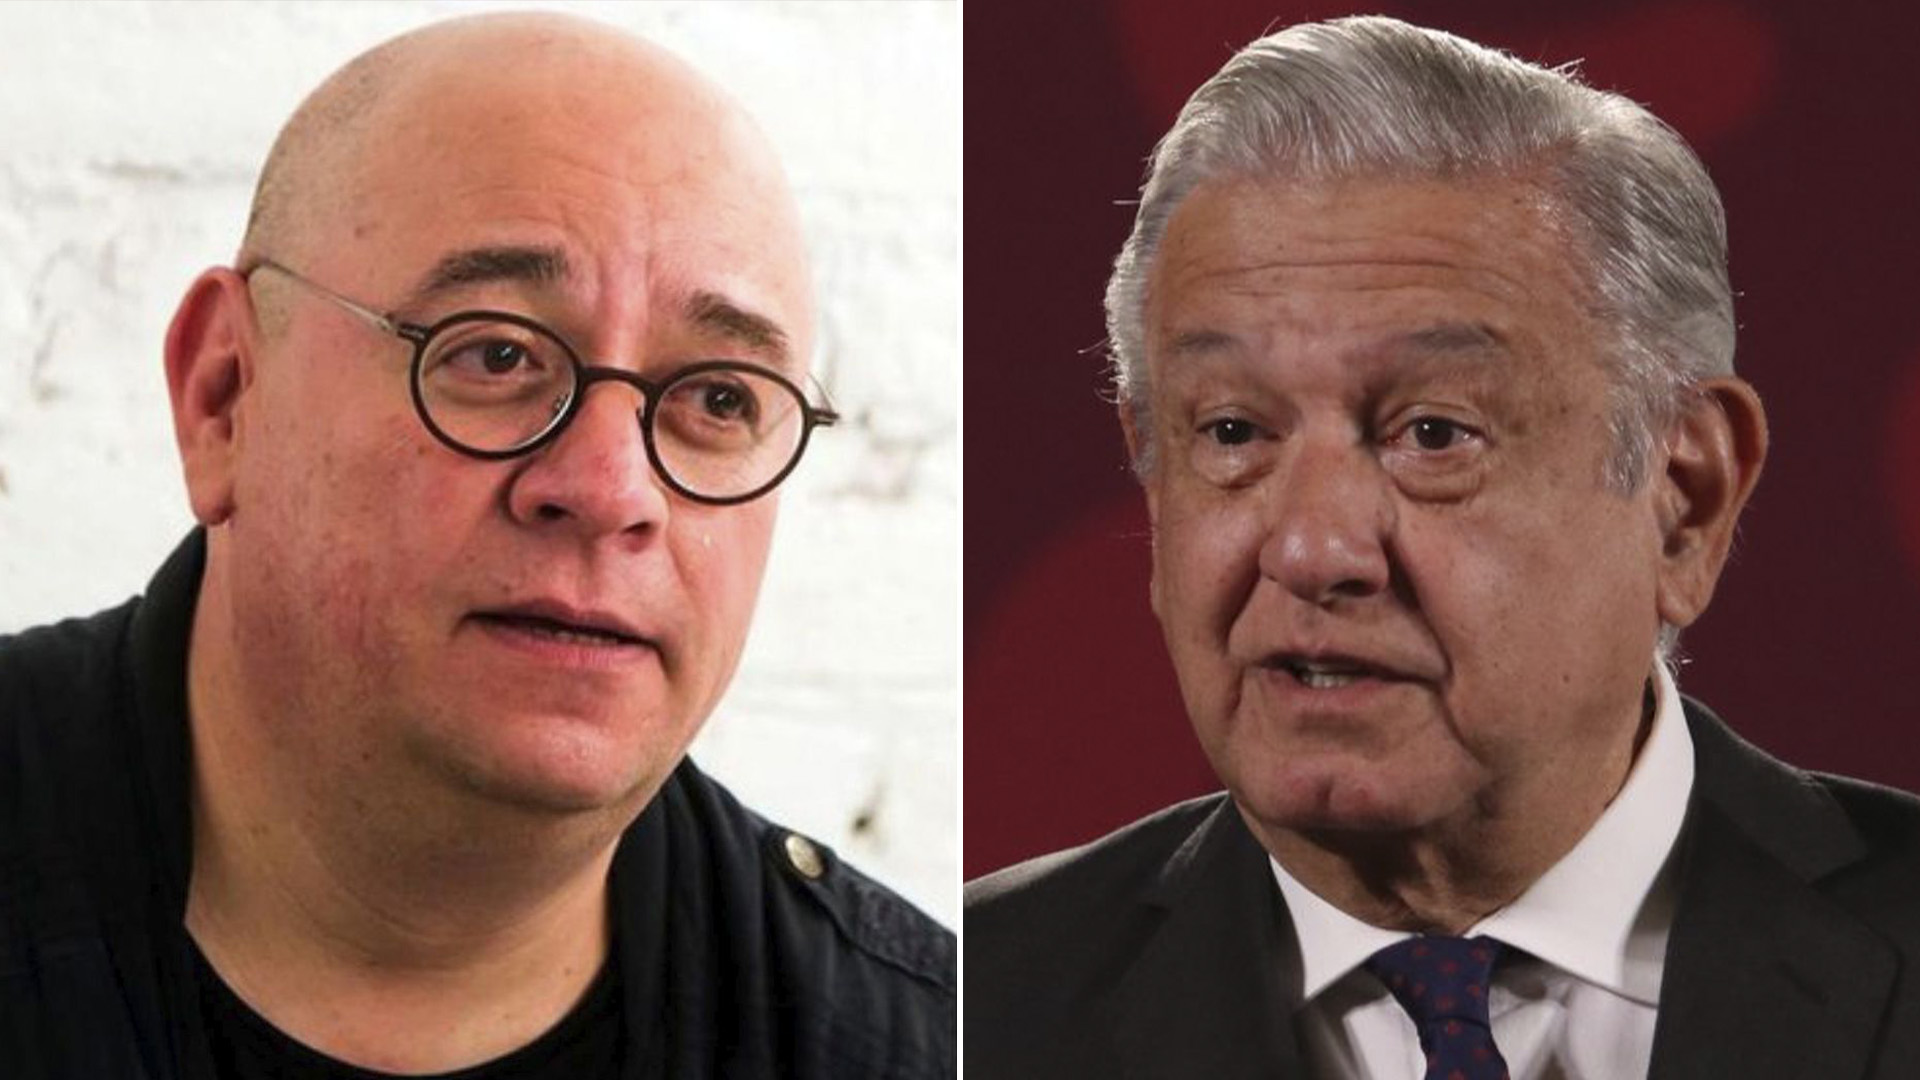 Víctor Trujillo despotricó a López Obrador por su contra-marcha: “Borracho de vanidad”